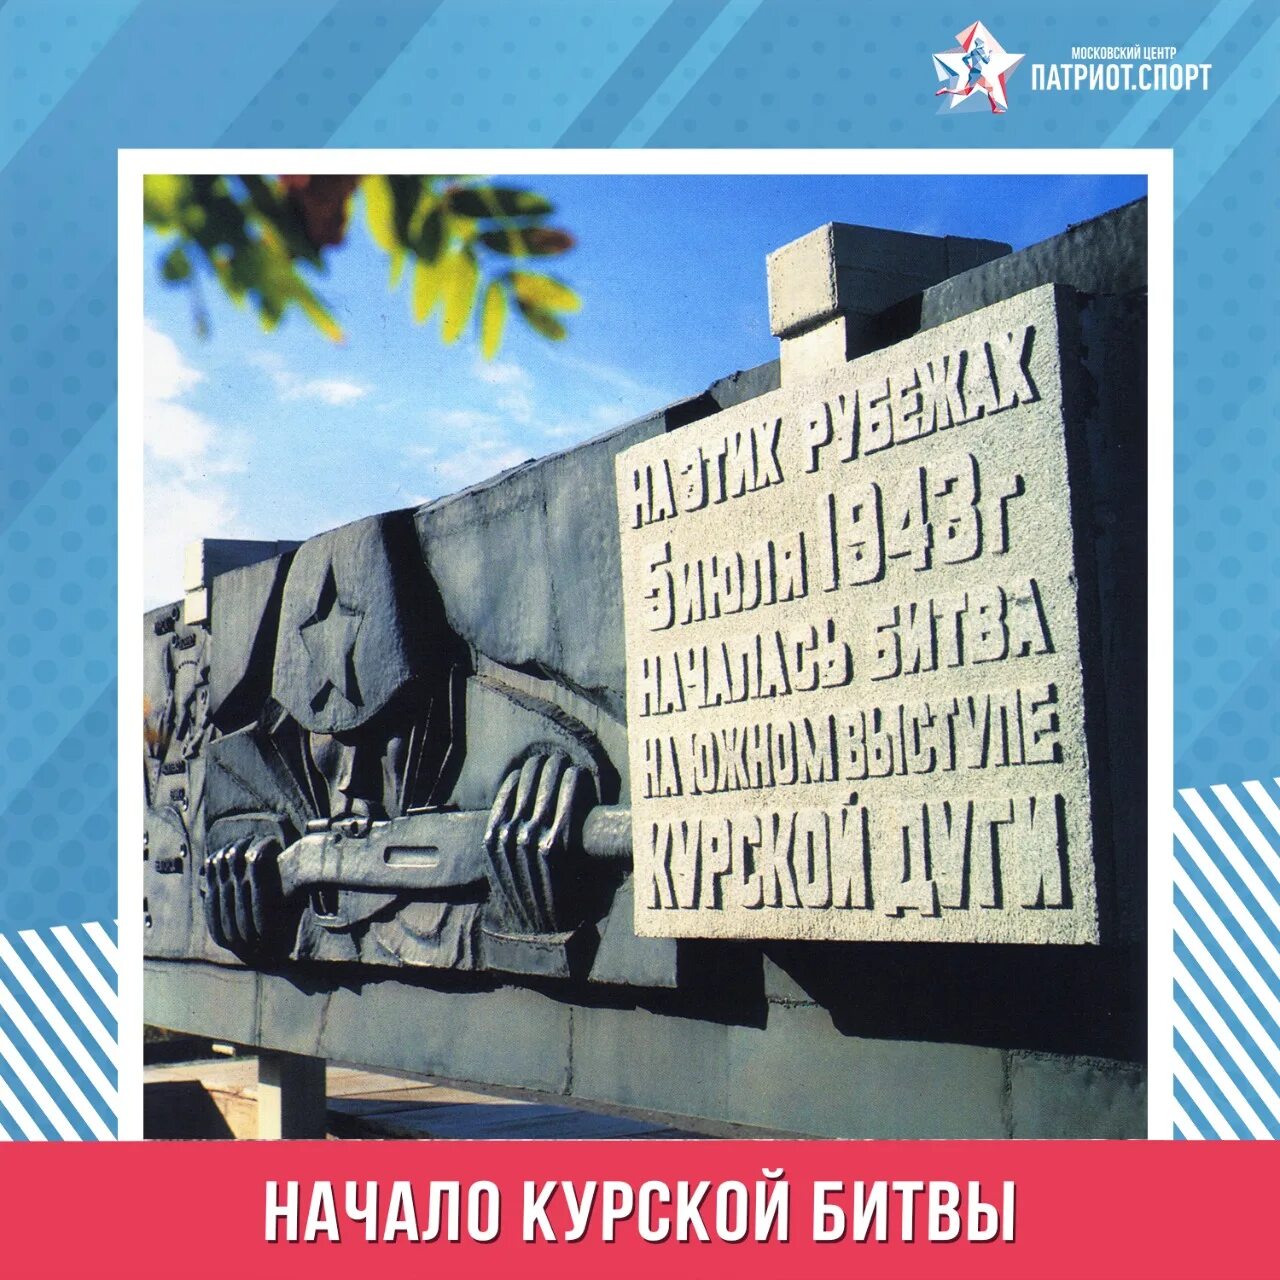 Время начала курской битвы. 5 Июля началась Курская битва. Начало Курской битвы. Курская битва 1943. 5 Июля 1943 года началась Курская битва.